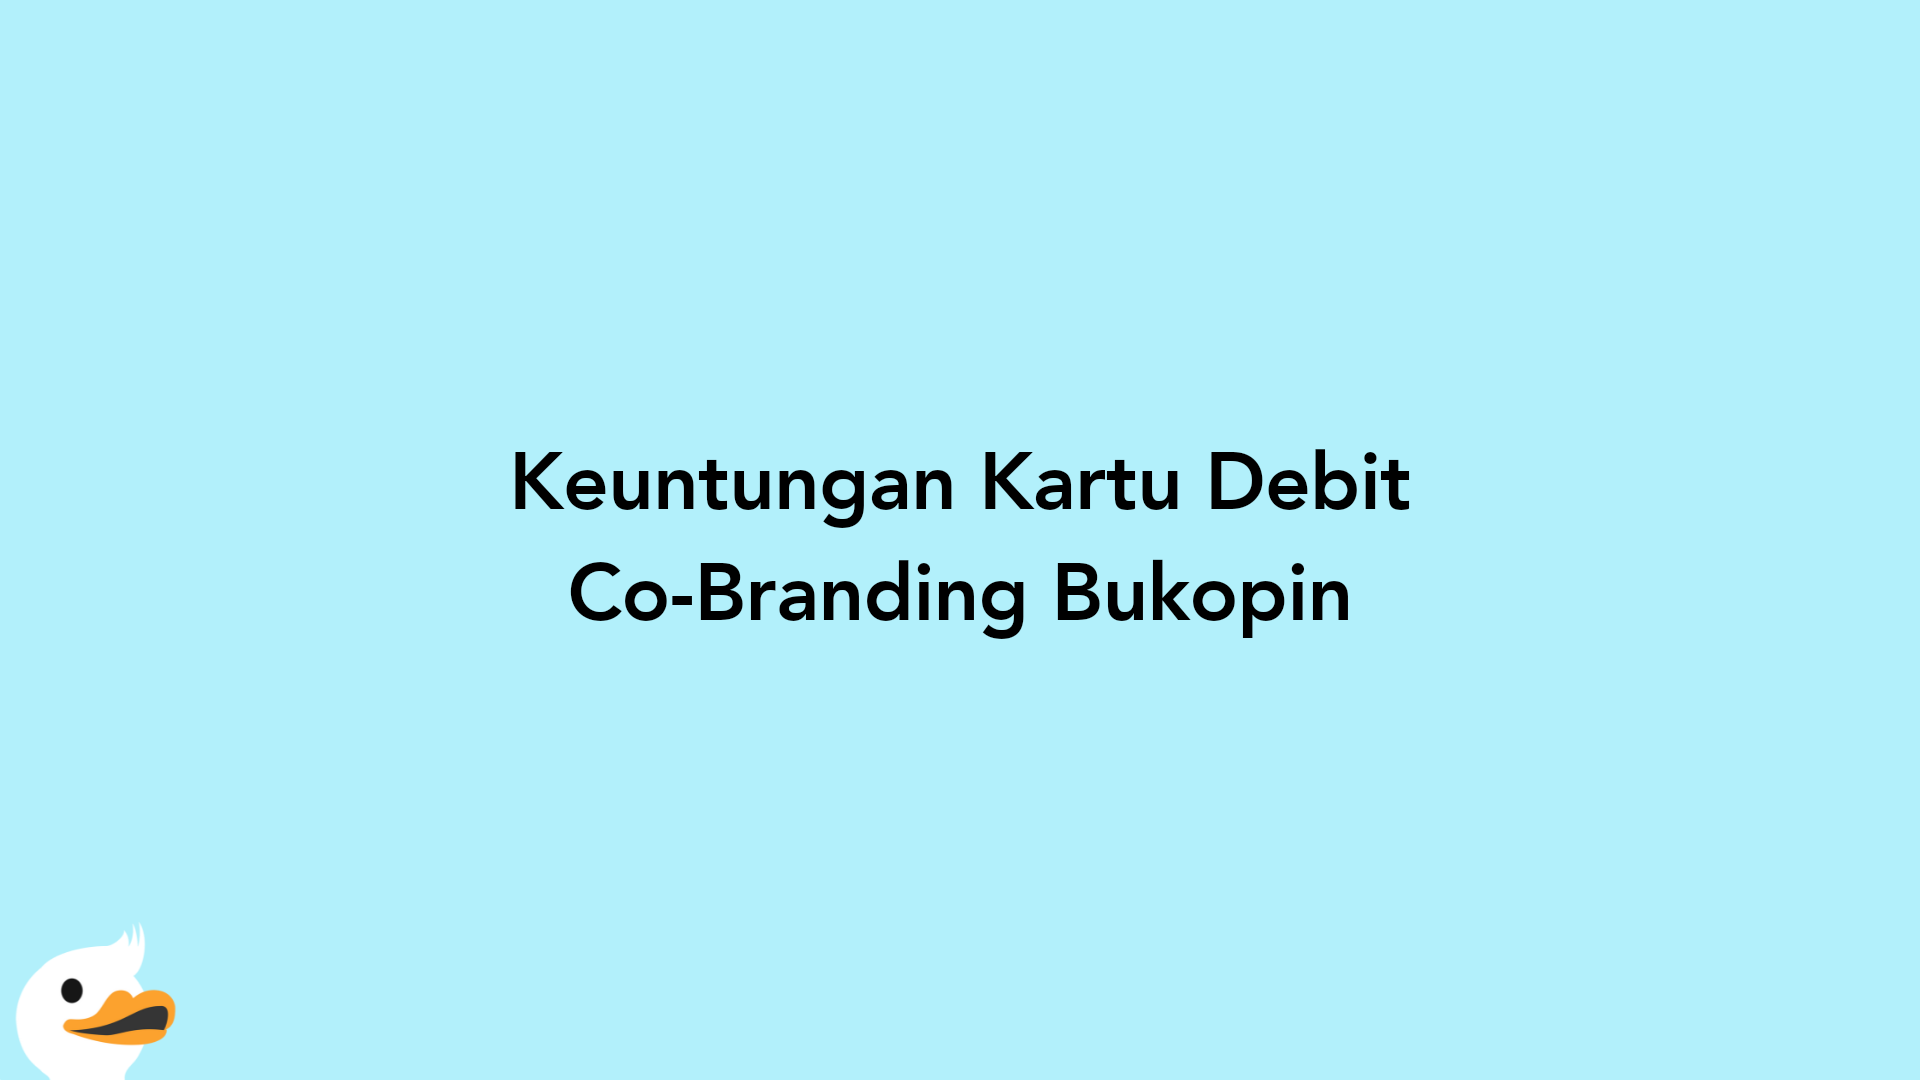 Keuntungan Kartu Debit Co-Branding Bukopin